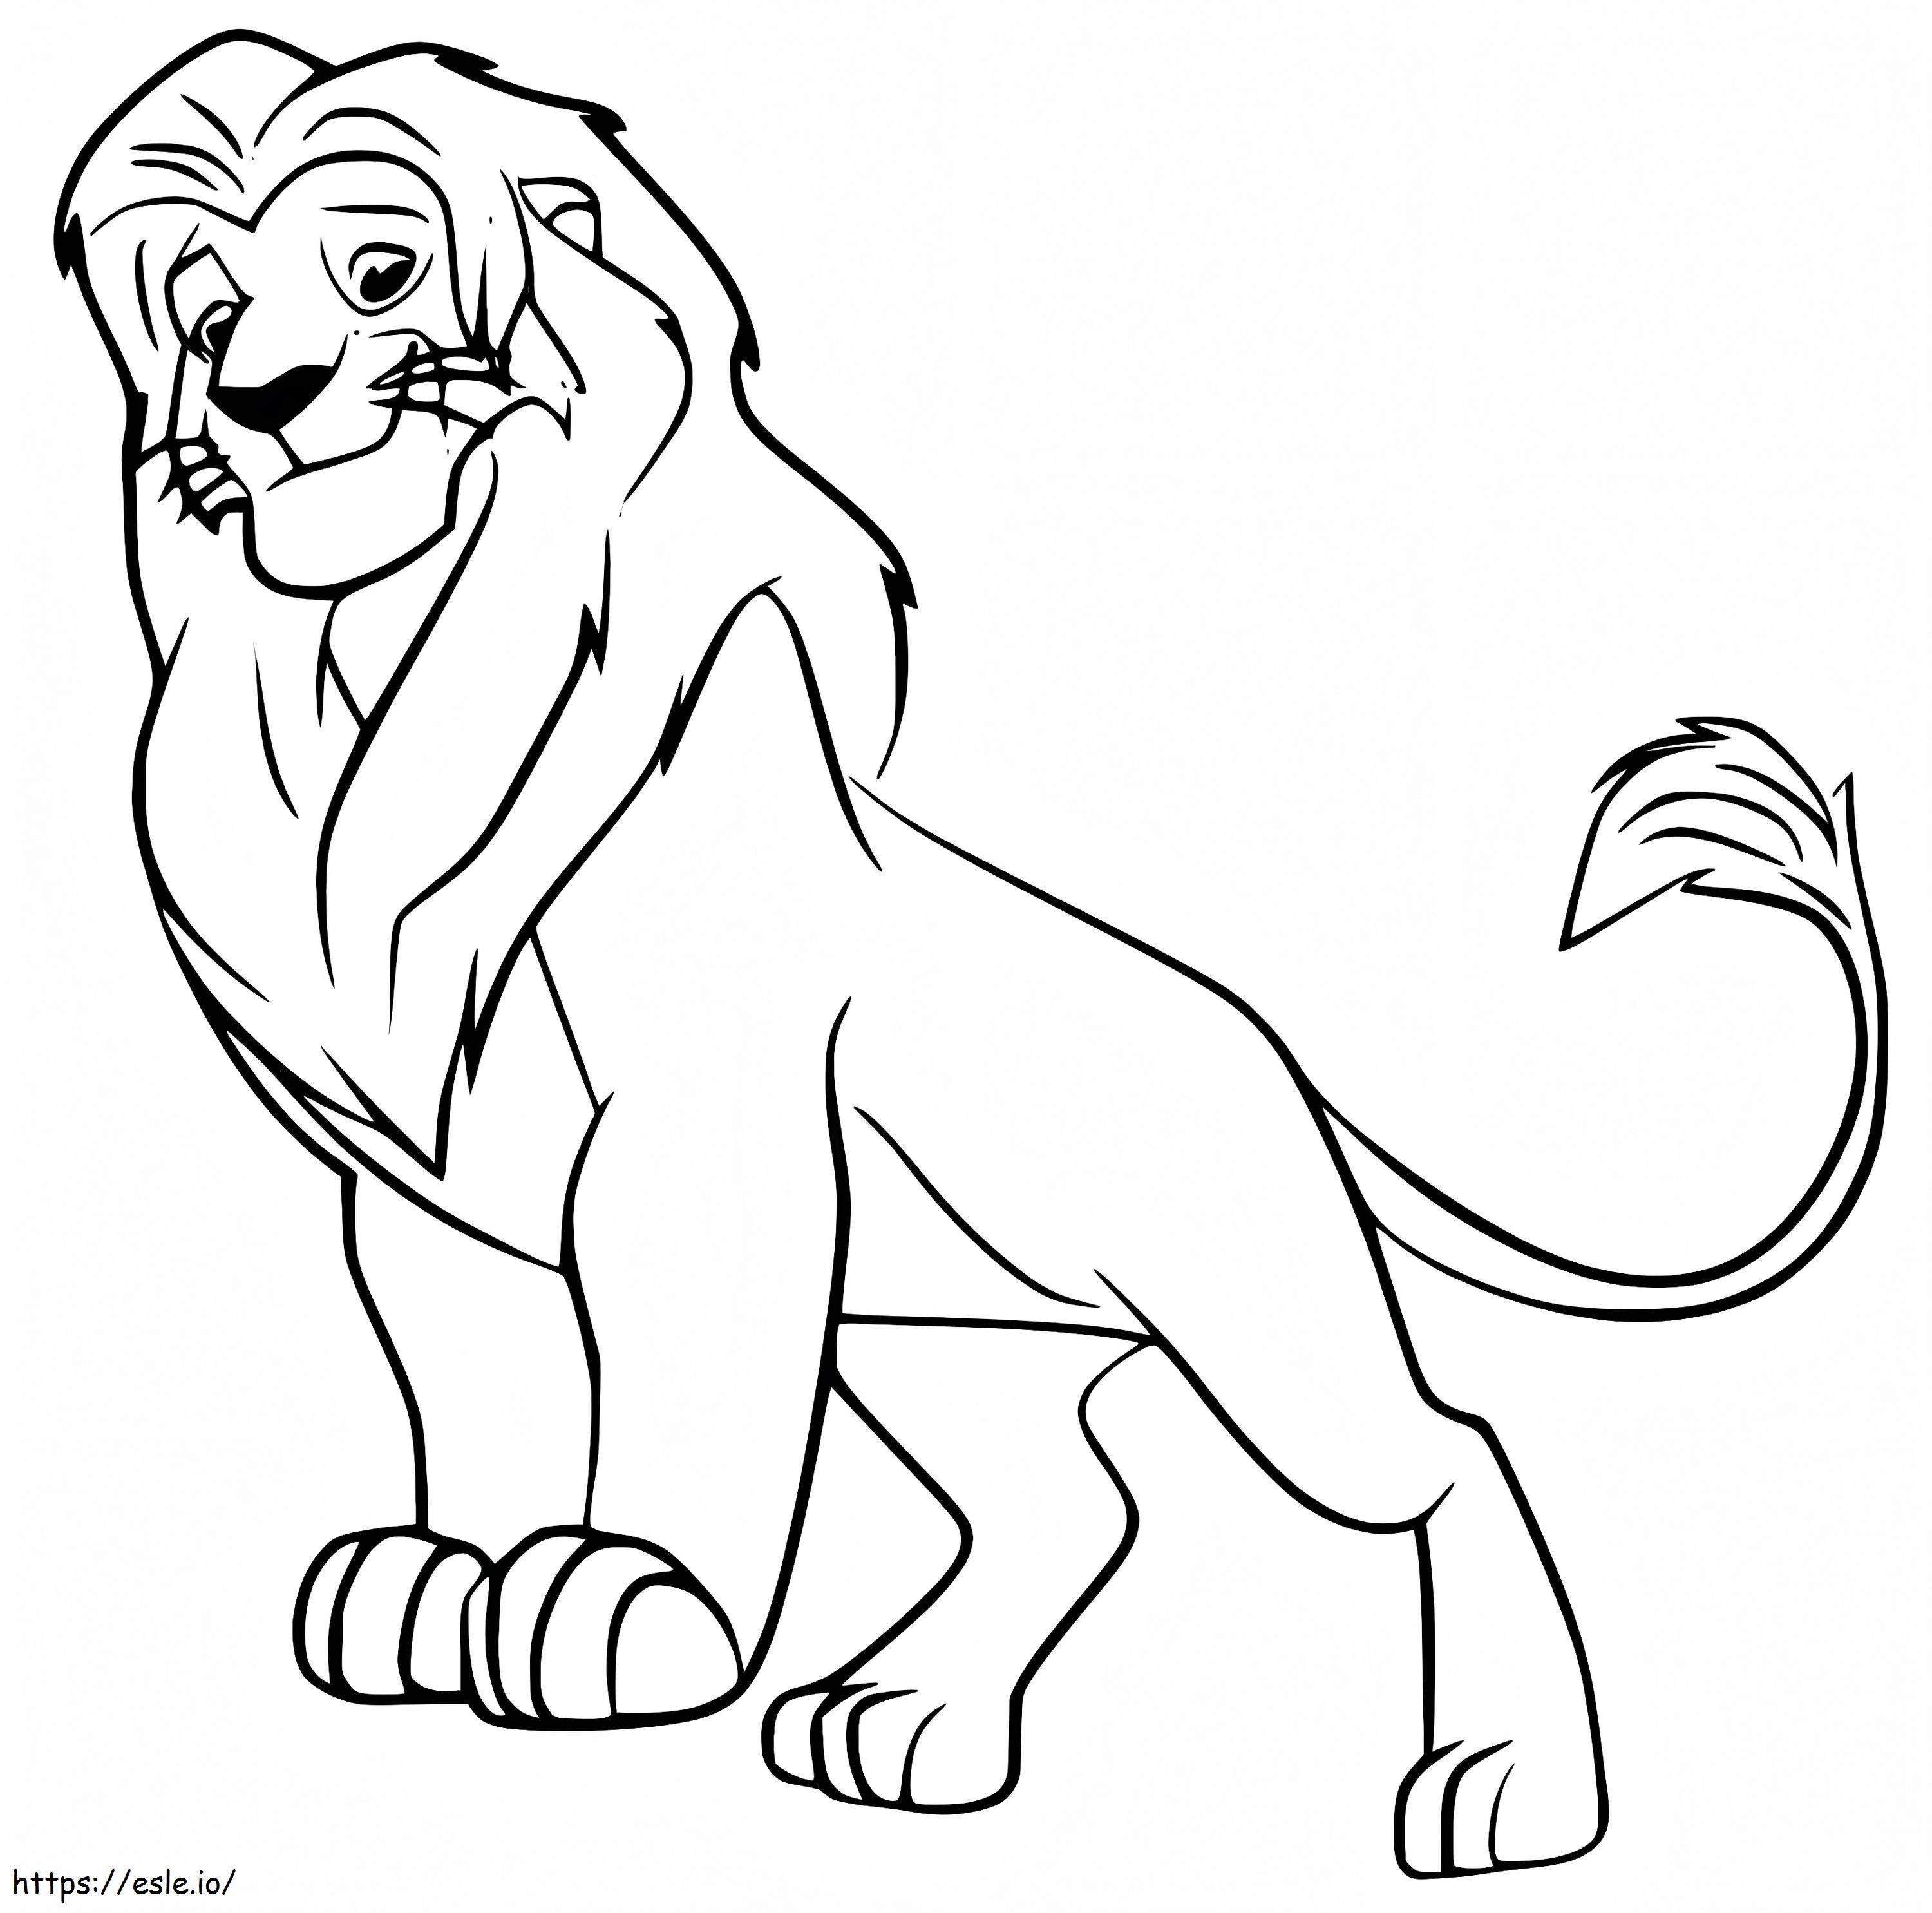 Simba da Guarda do Leão para colorir